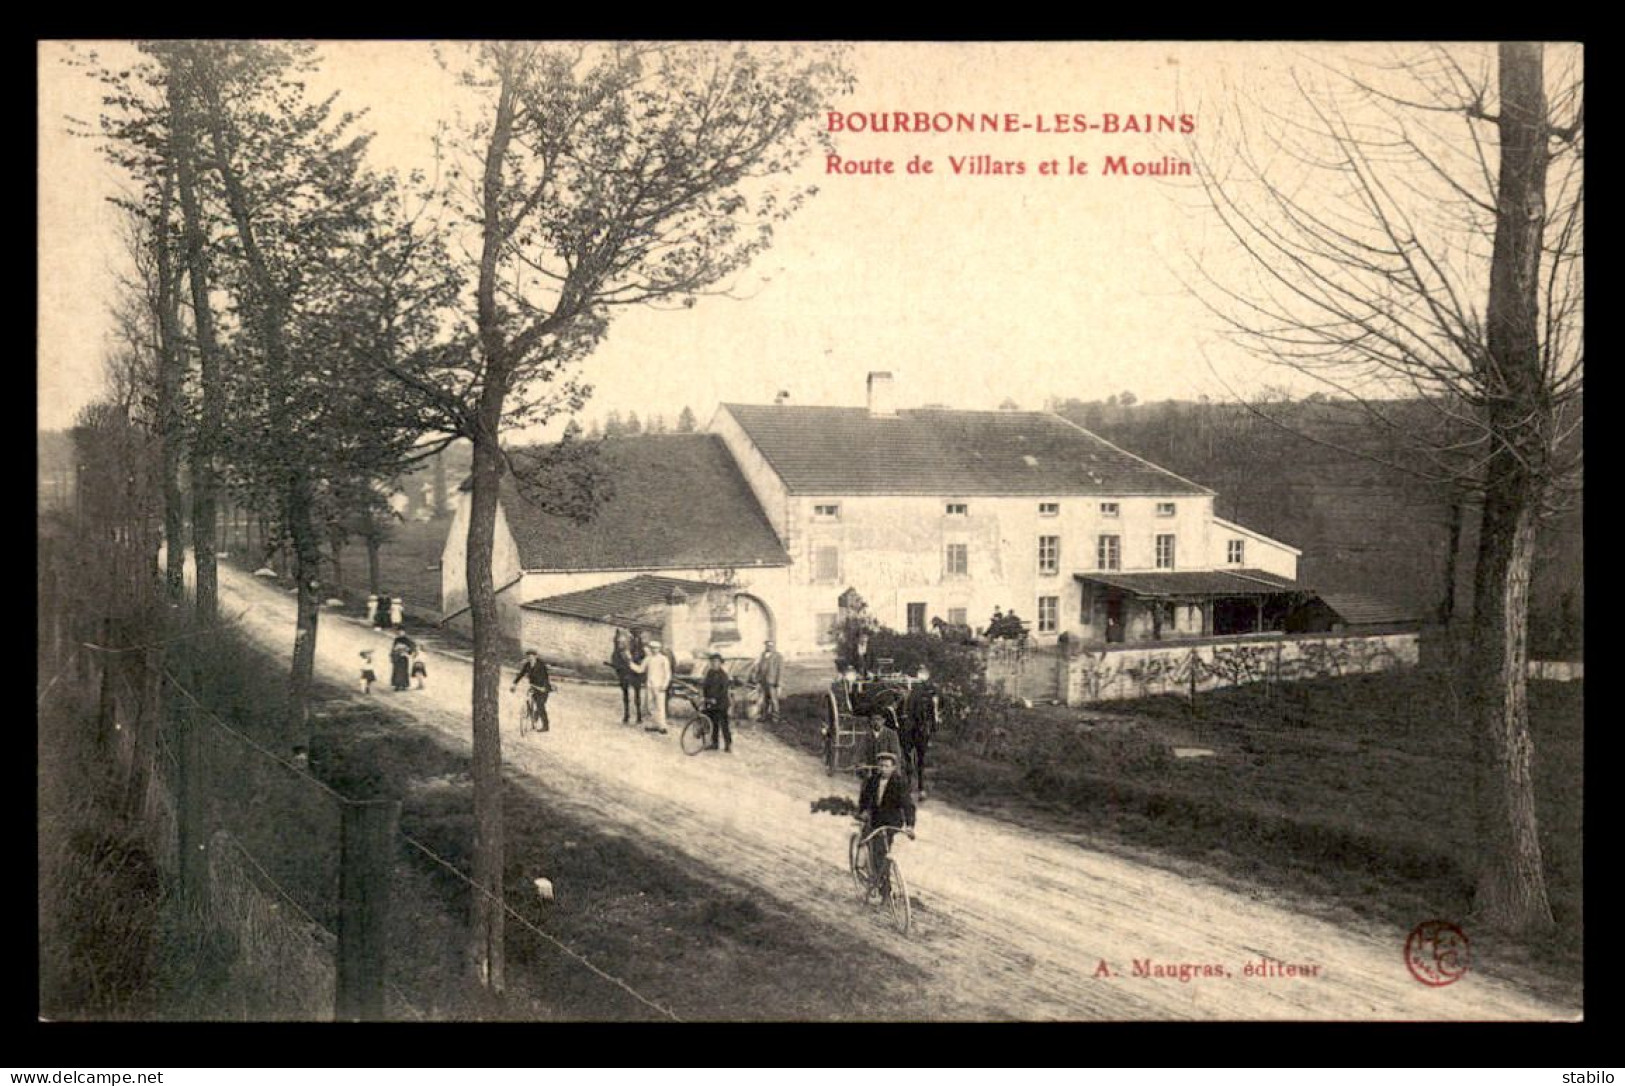 52 - BOURBONNE-LES-BAINS - ROUTE DE VILLARS ET LE MOULIN - Bourbonne Les Bains